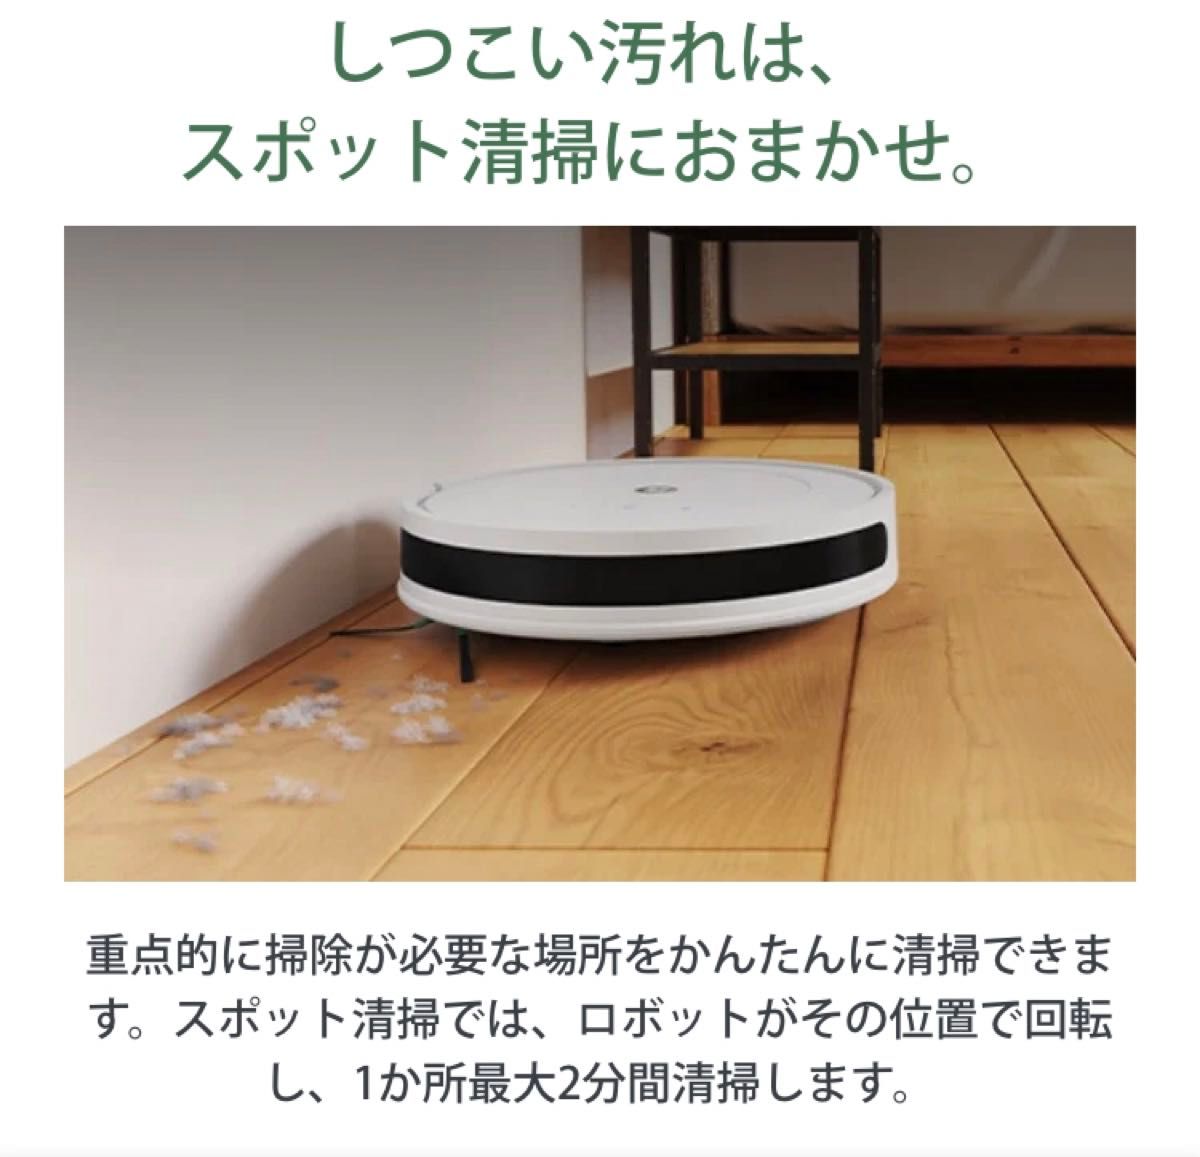 ロボット掃除機 ルンバ コンボ Essential robot アイロボット 床拭き 水拭き 最新  ホワイト Y011260